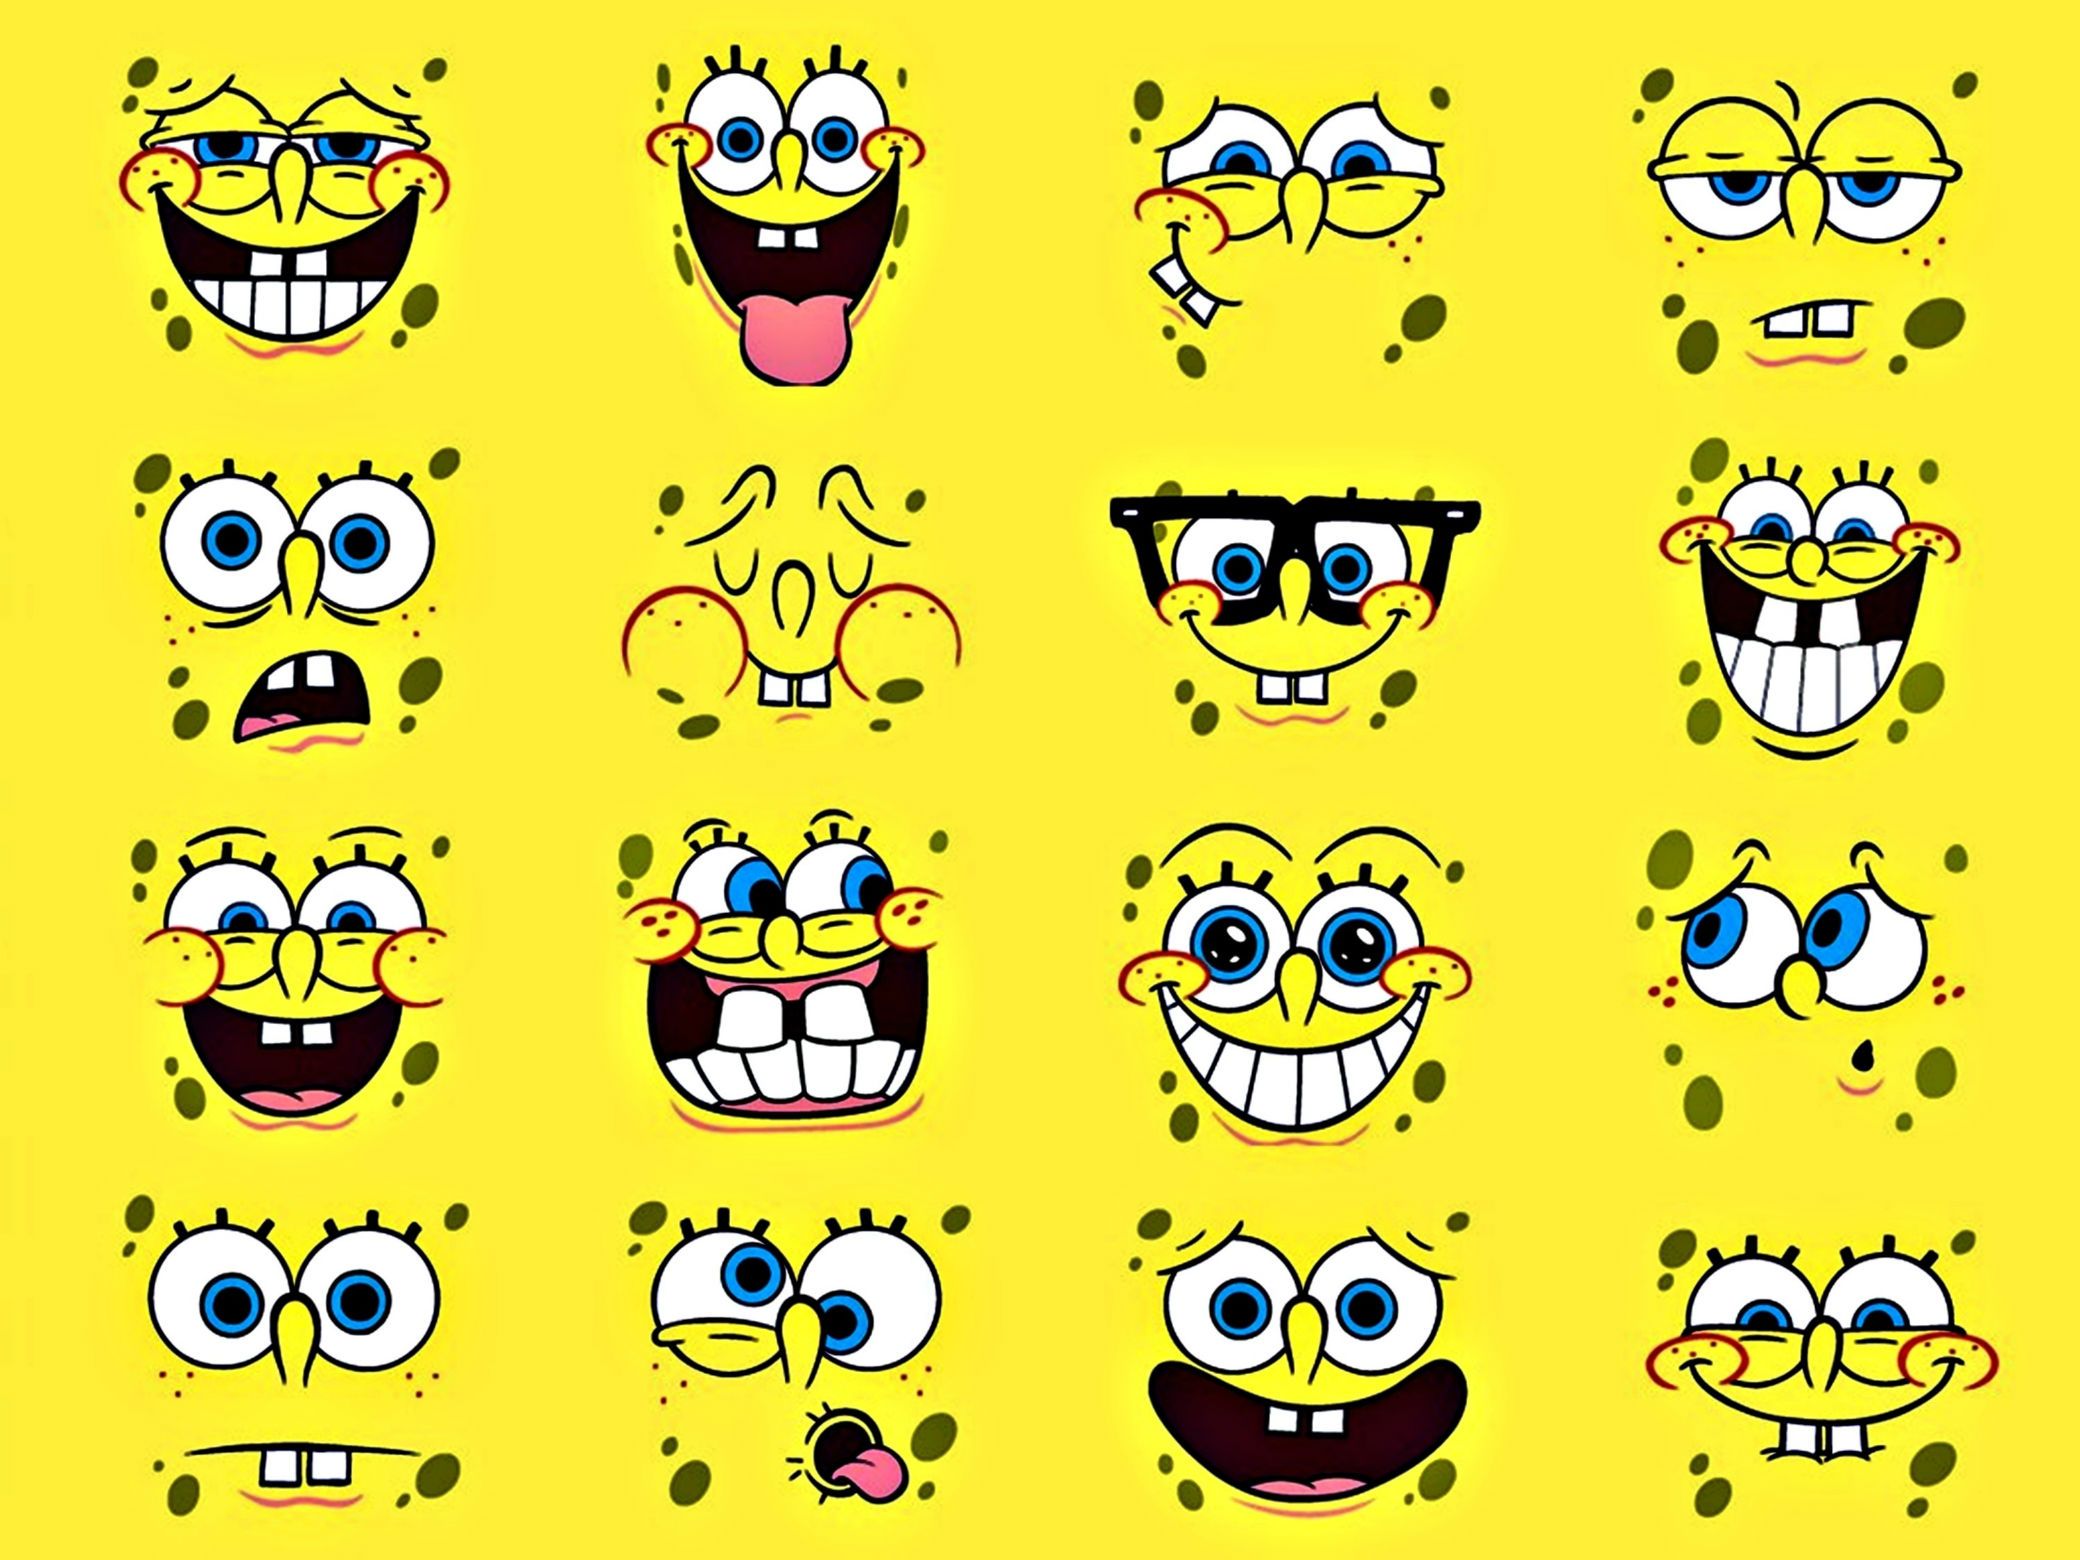 Spongebob Squarepants Computer Wallpapers, Desktop Backgrounds